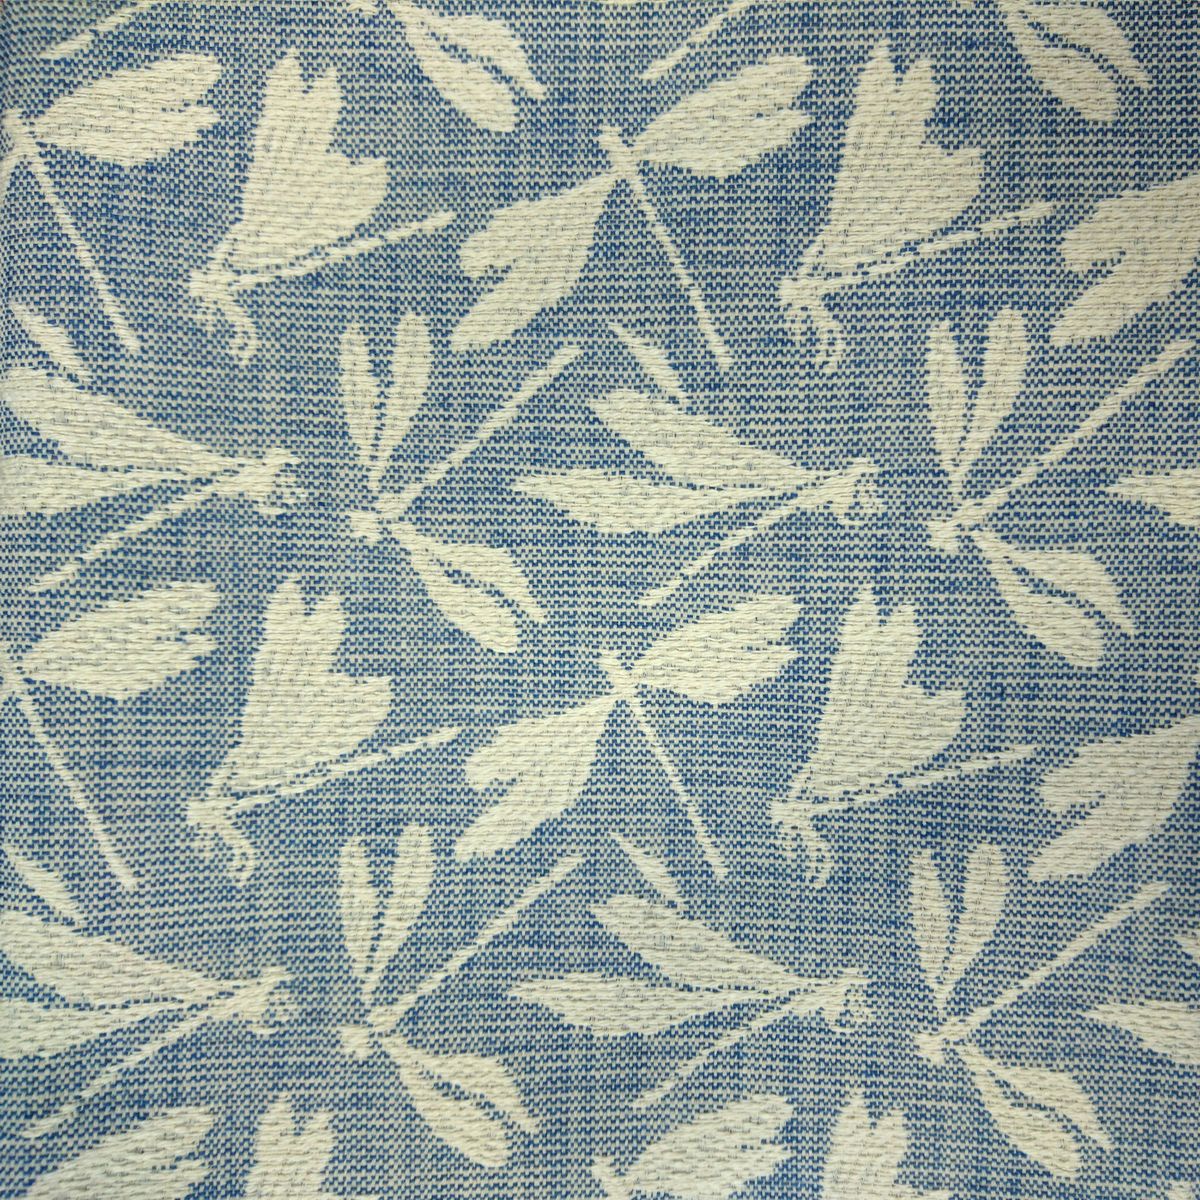 Meddon Cornflower Fabric by Voyage Maison